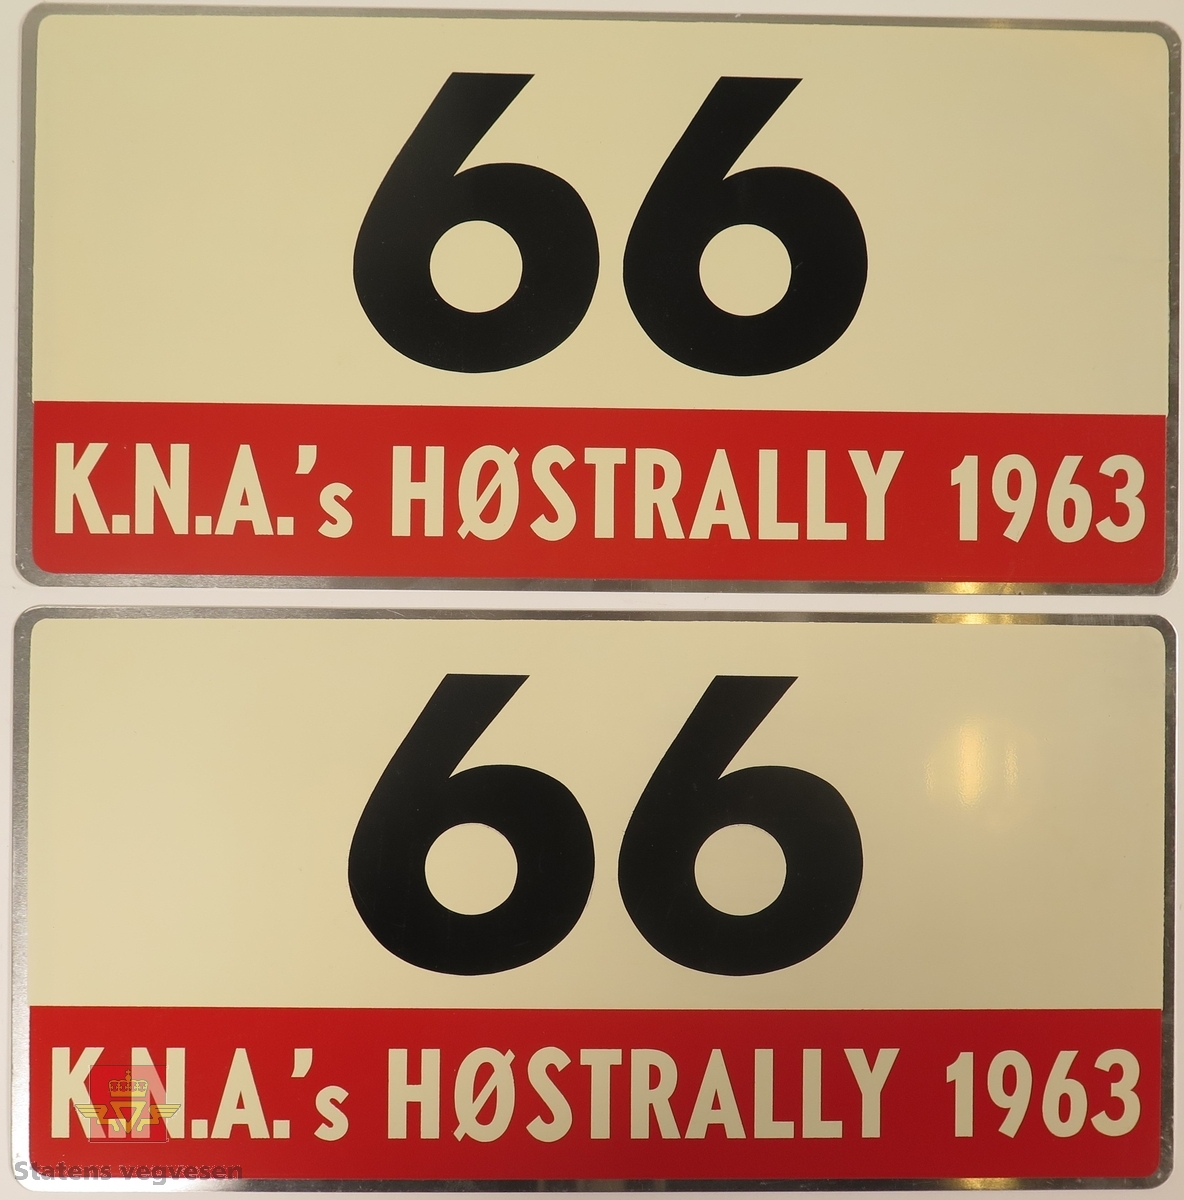 Hovedsakelig hvite metallskilt med et mindre rødt markeringsområde. Grupperingen med skilt har også nummeret "66" påført seg, dette er en indikasjon på deltakernummer.
Påskrift: K.N.A.'s HØSTRALLY 1963